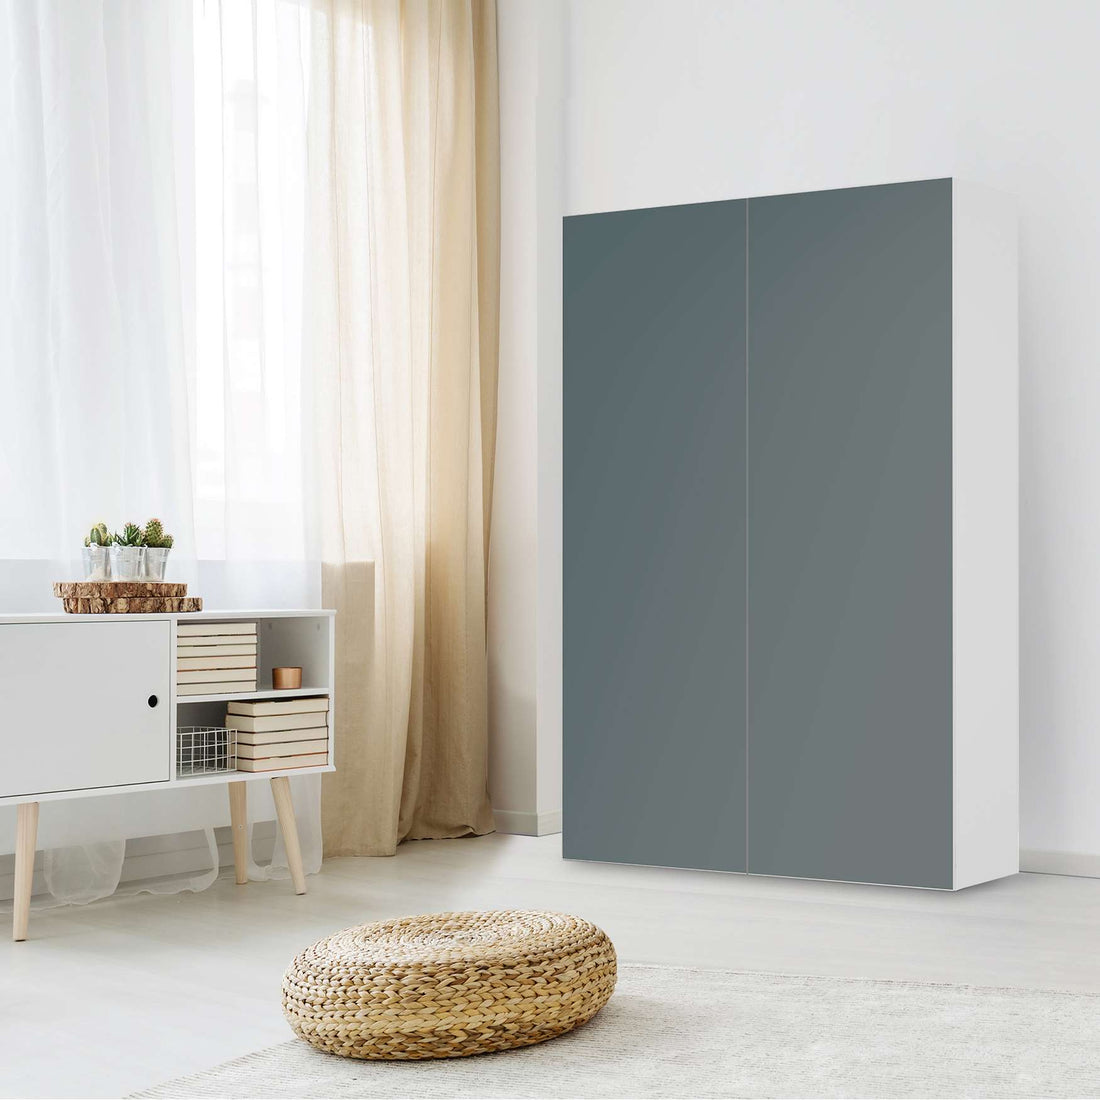 Klebefolie für Möbel Blaugrau Light - IKEA Besta Schrank Hoch 2 Türen - Wohnzimmer